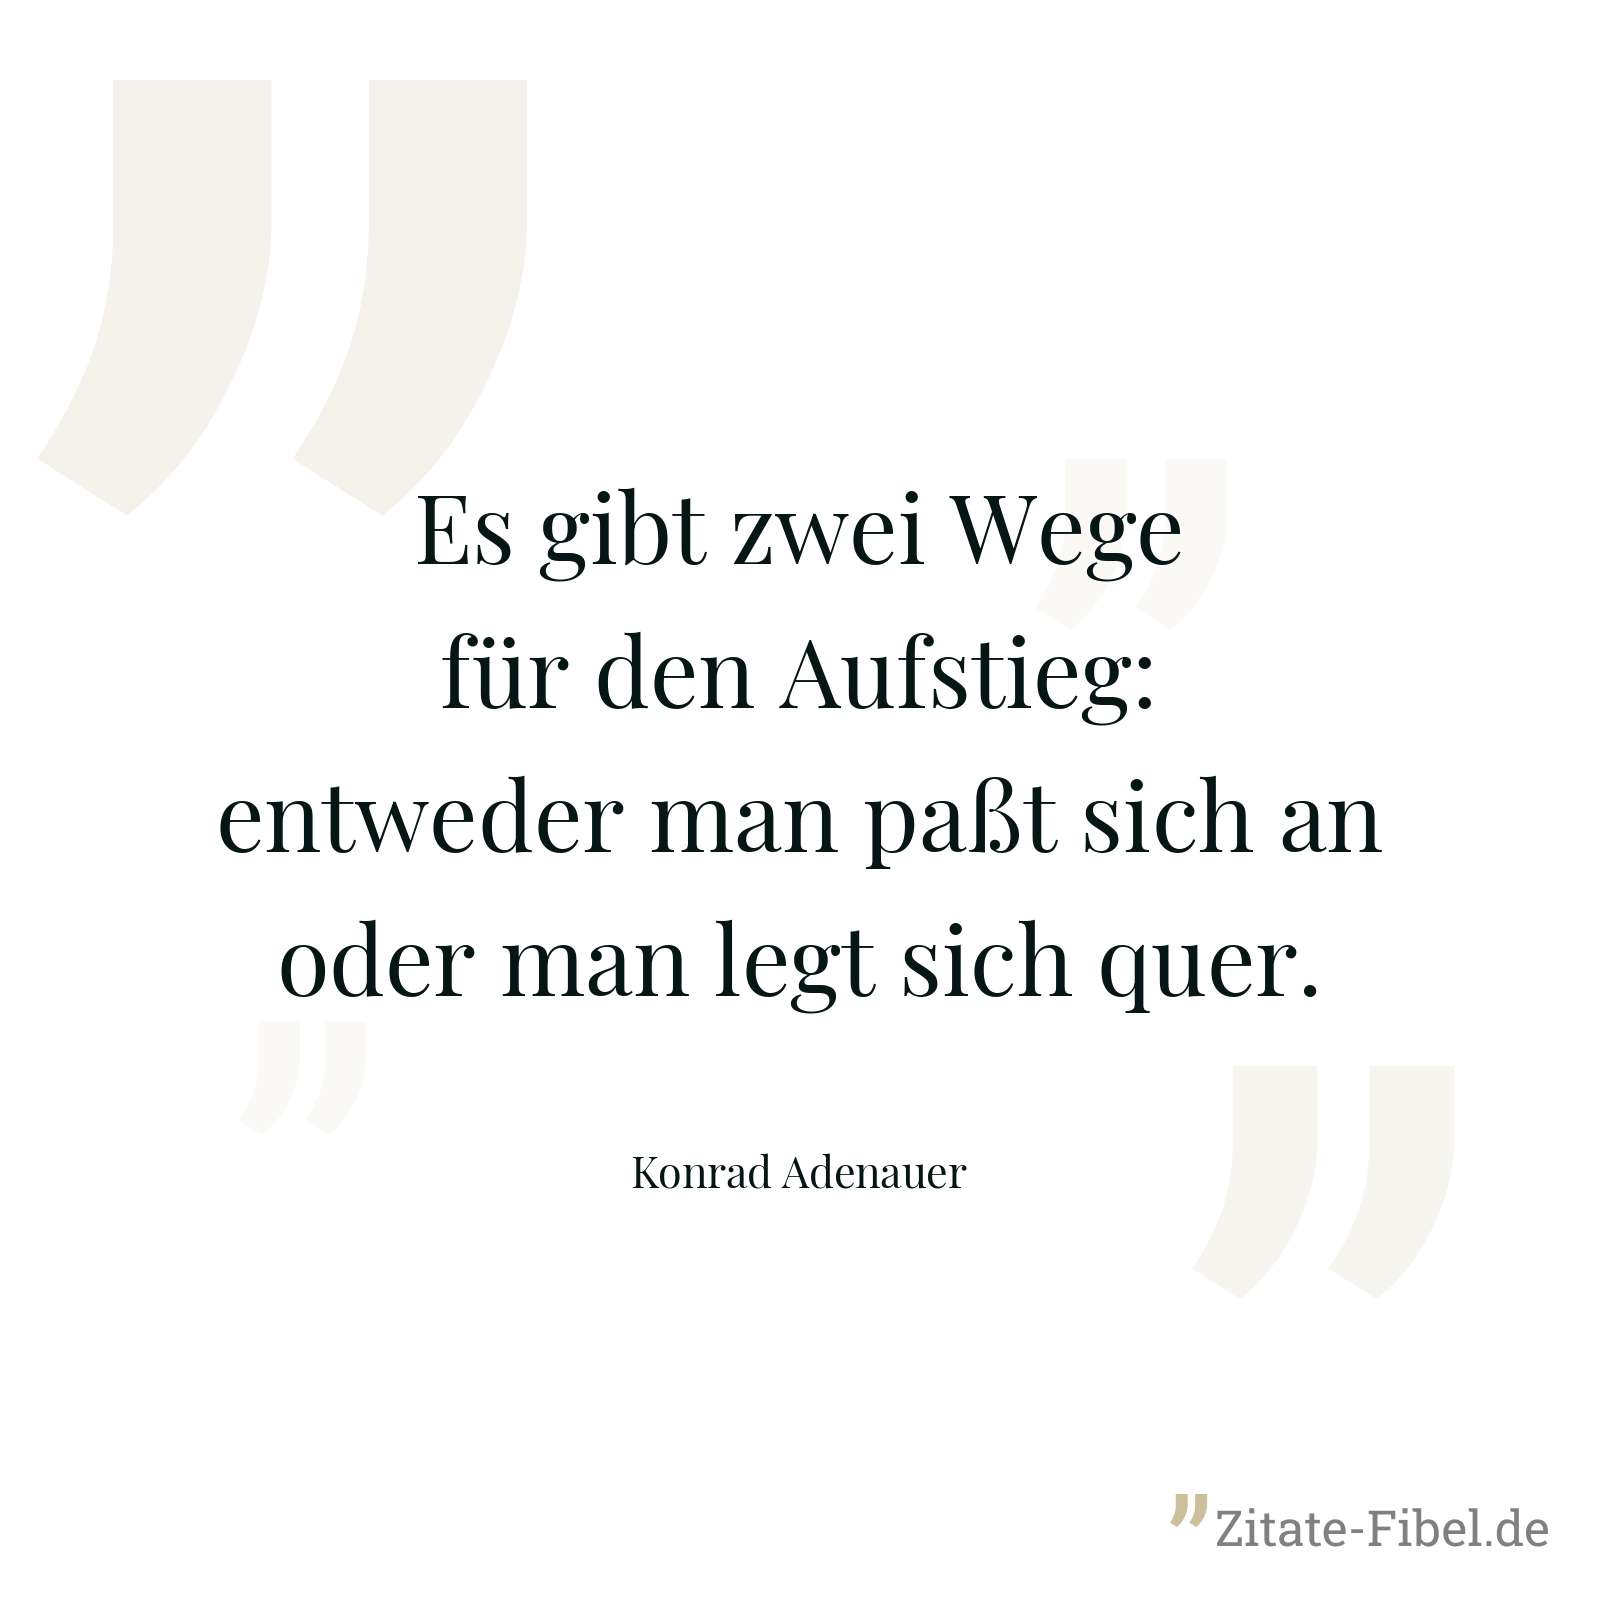 Es gibt zwei Wege für den Aufstieg: entweder man paßt sich an oder man legt sich quer. - Konrad Adenauer